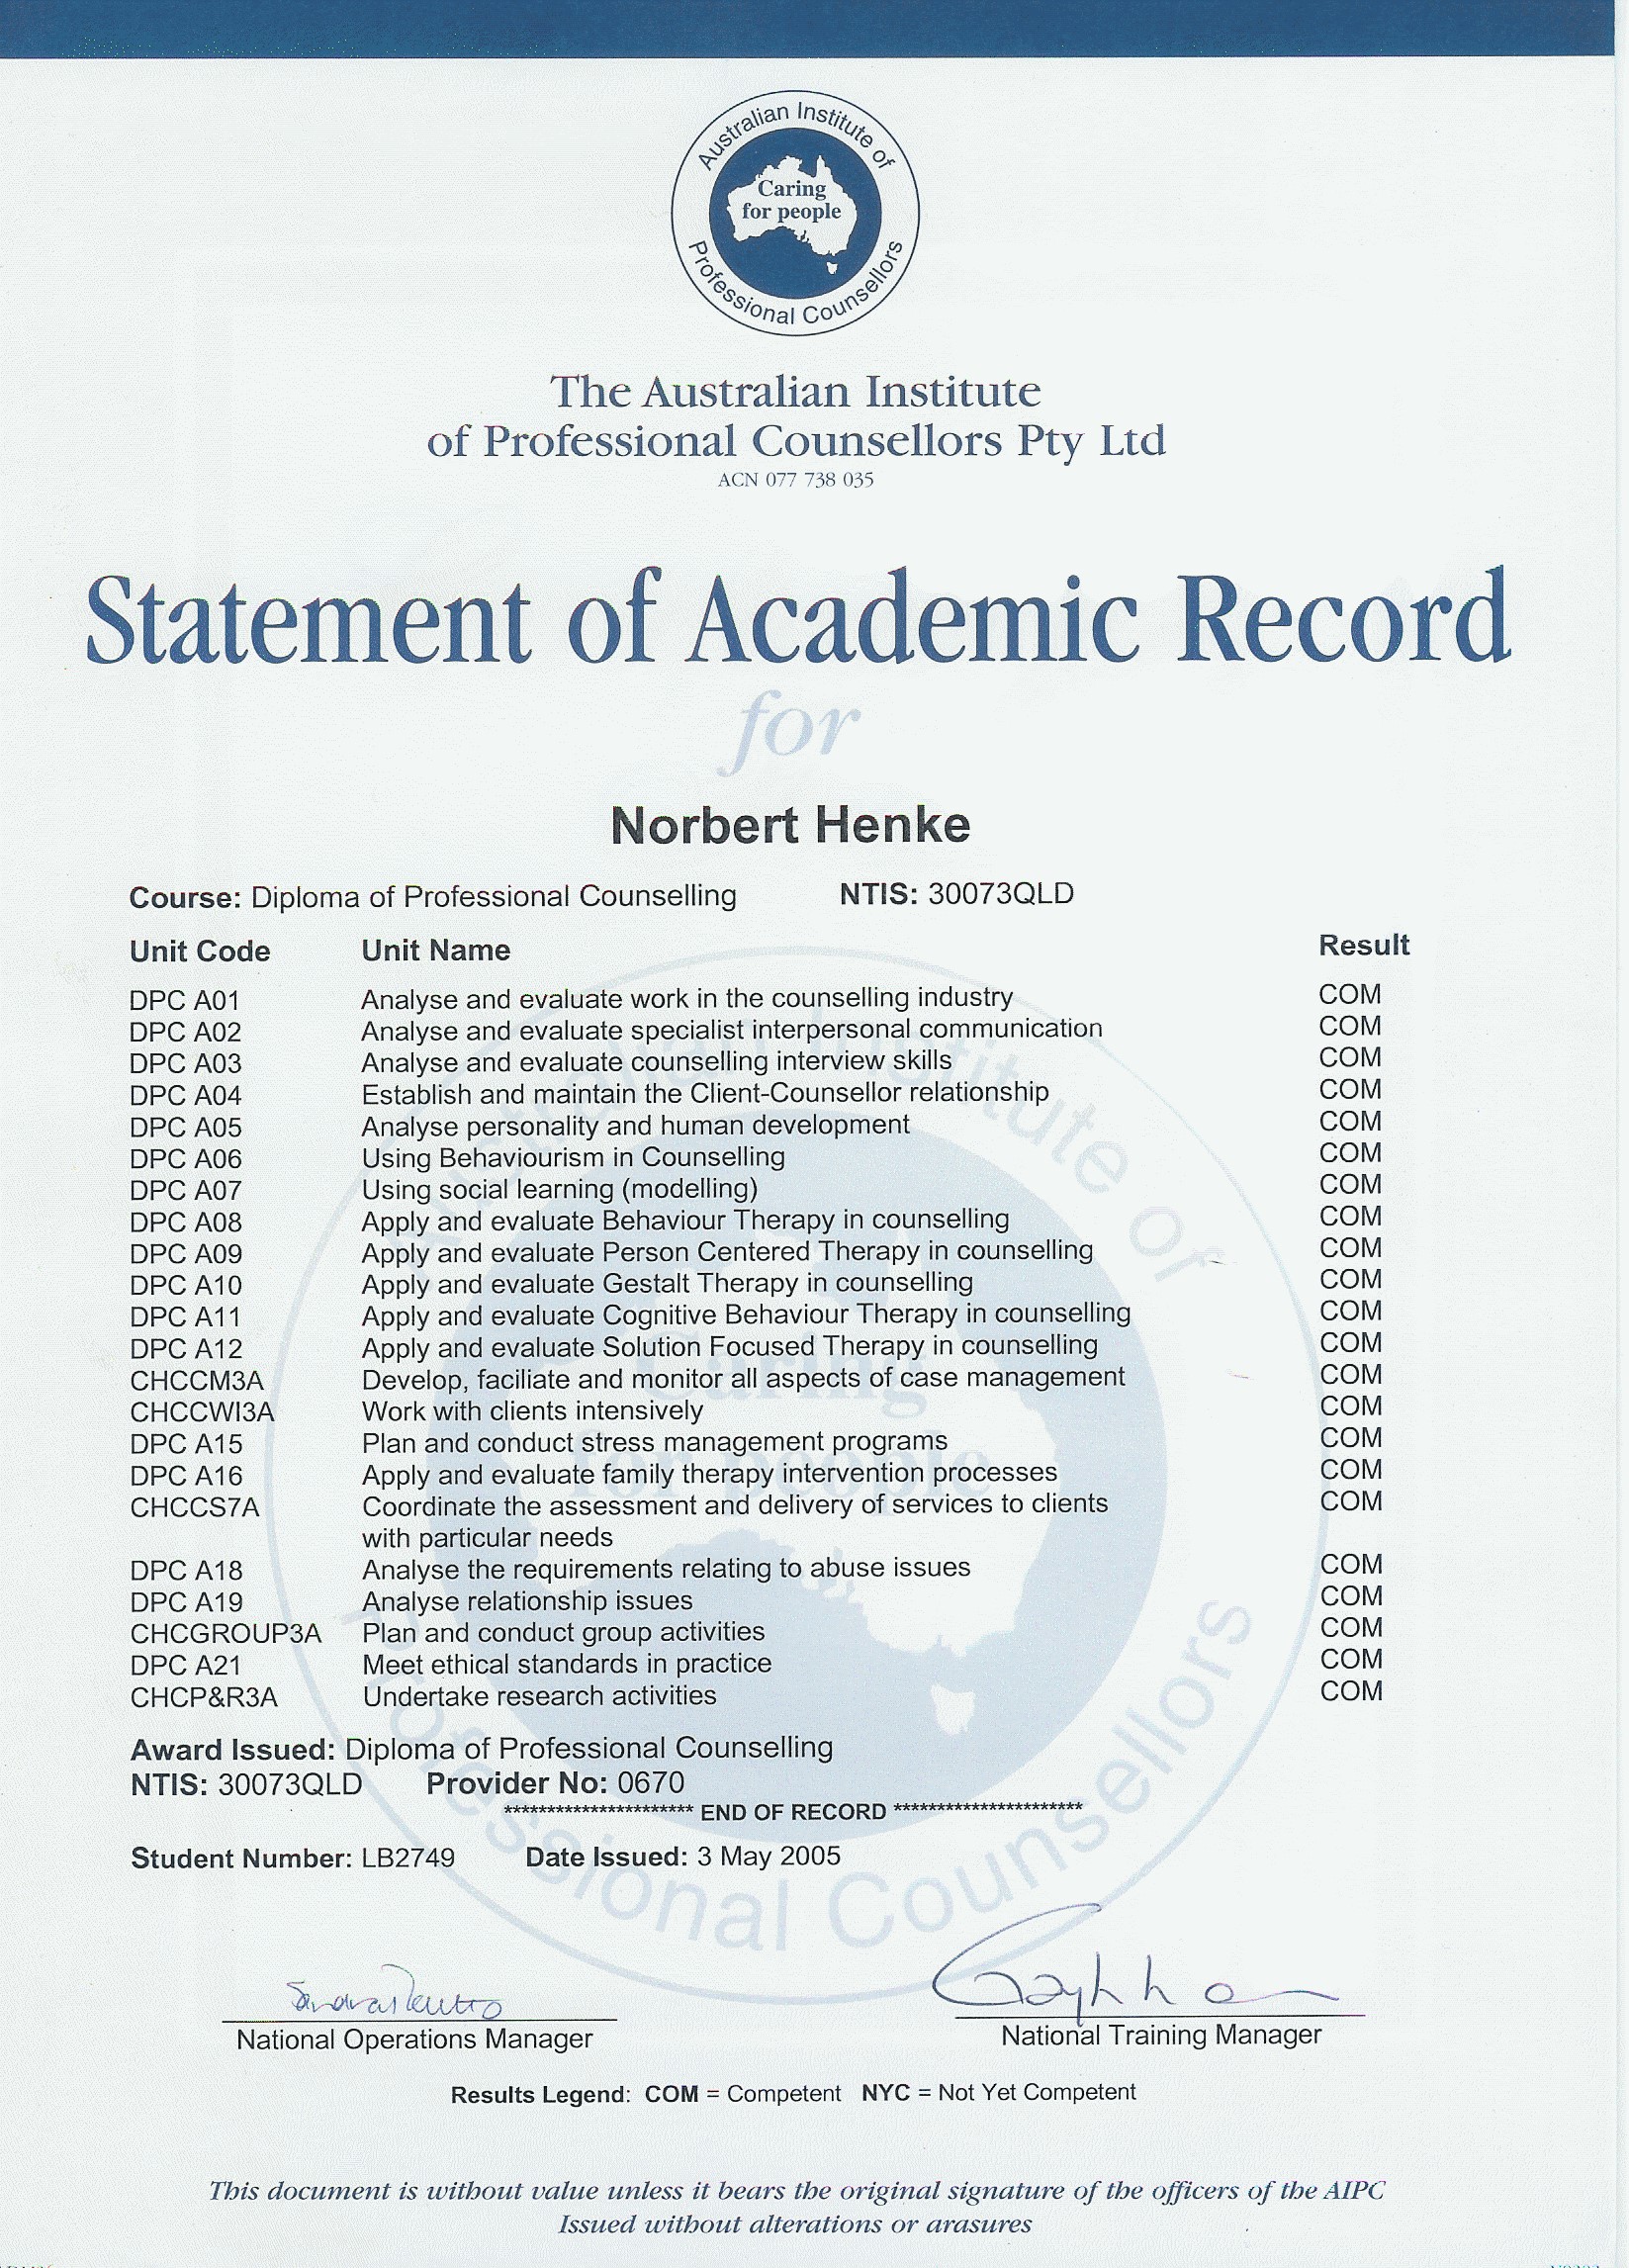 Academic records